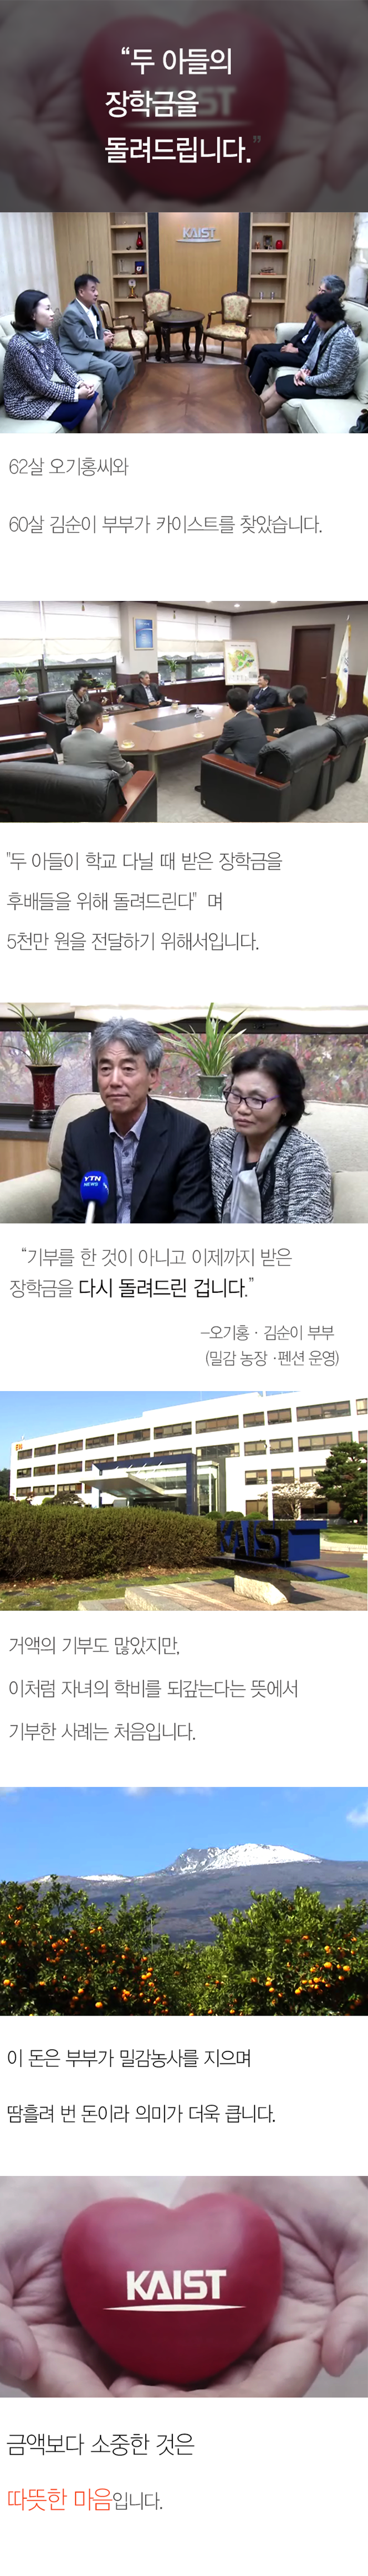 [한컷뉴스] "두 아들의 장학금을 돌려드립니다"